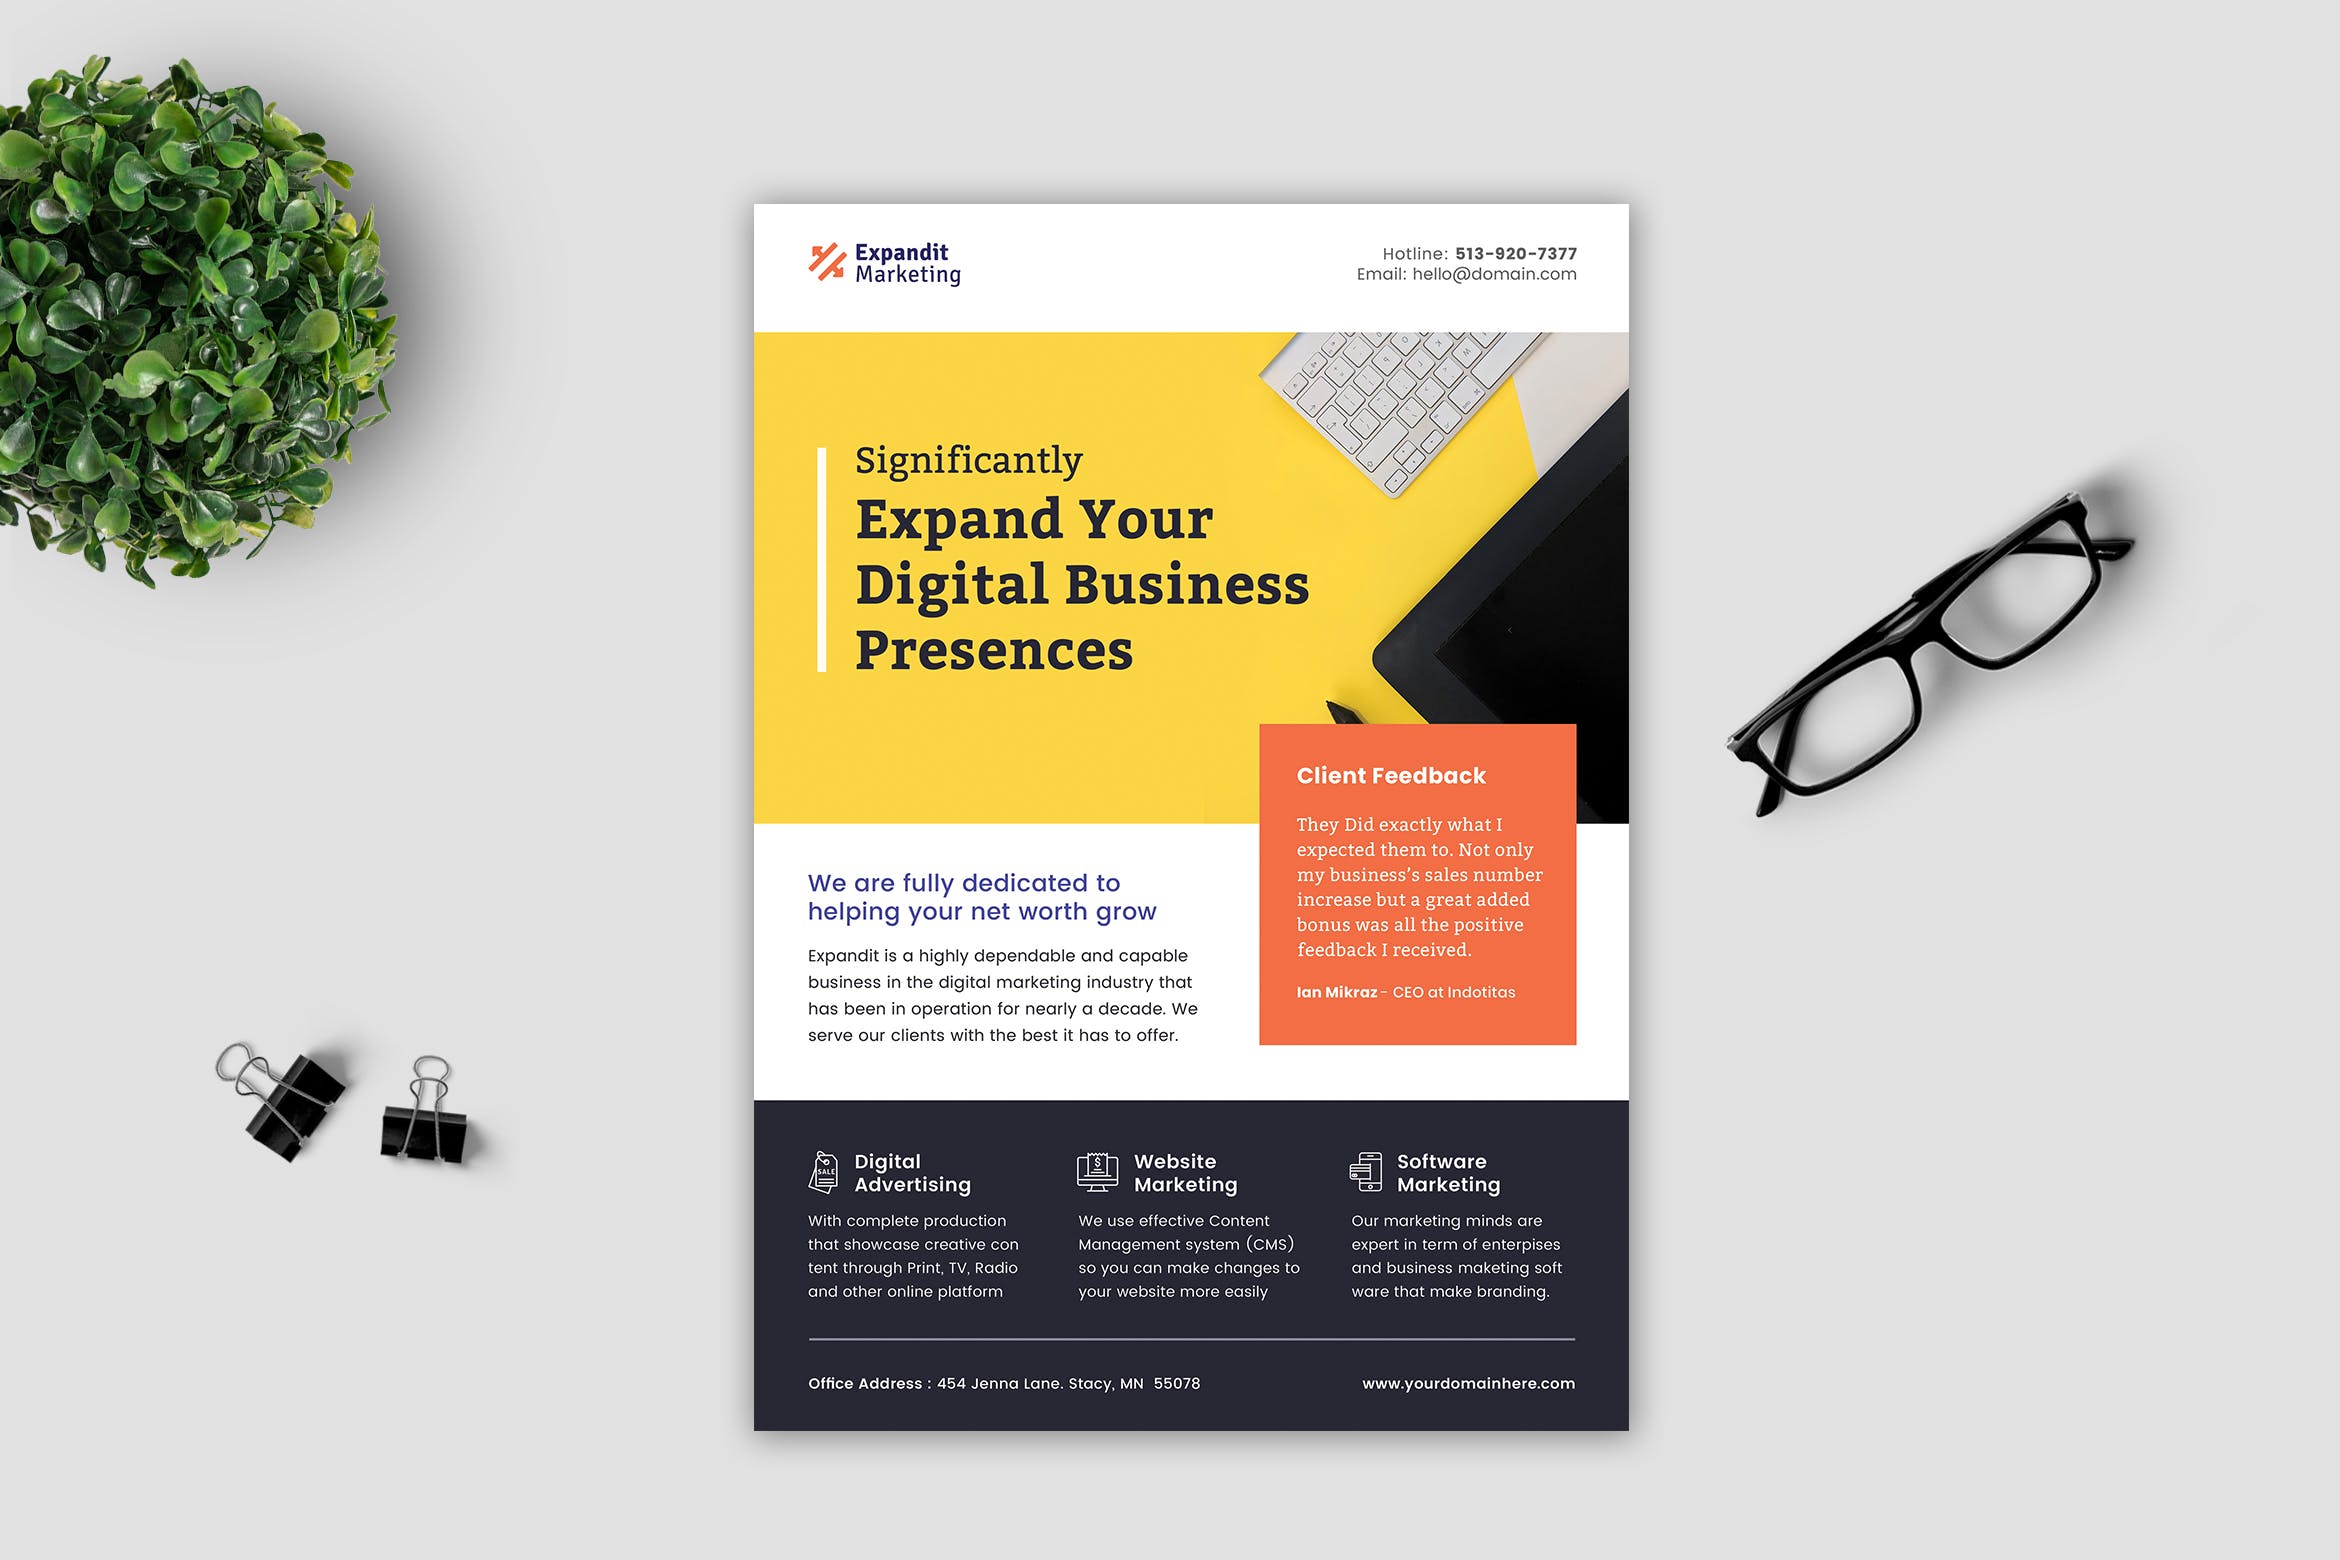 互联网数字营销公司宣传单设计模板 Expandit Marketing Company Flyer插图